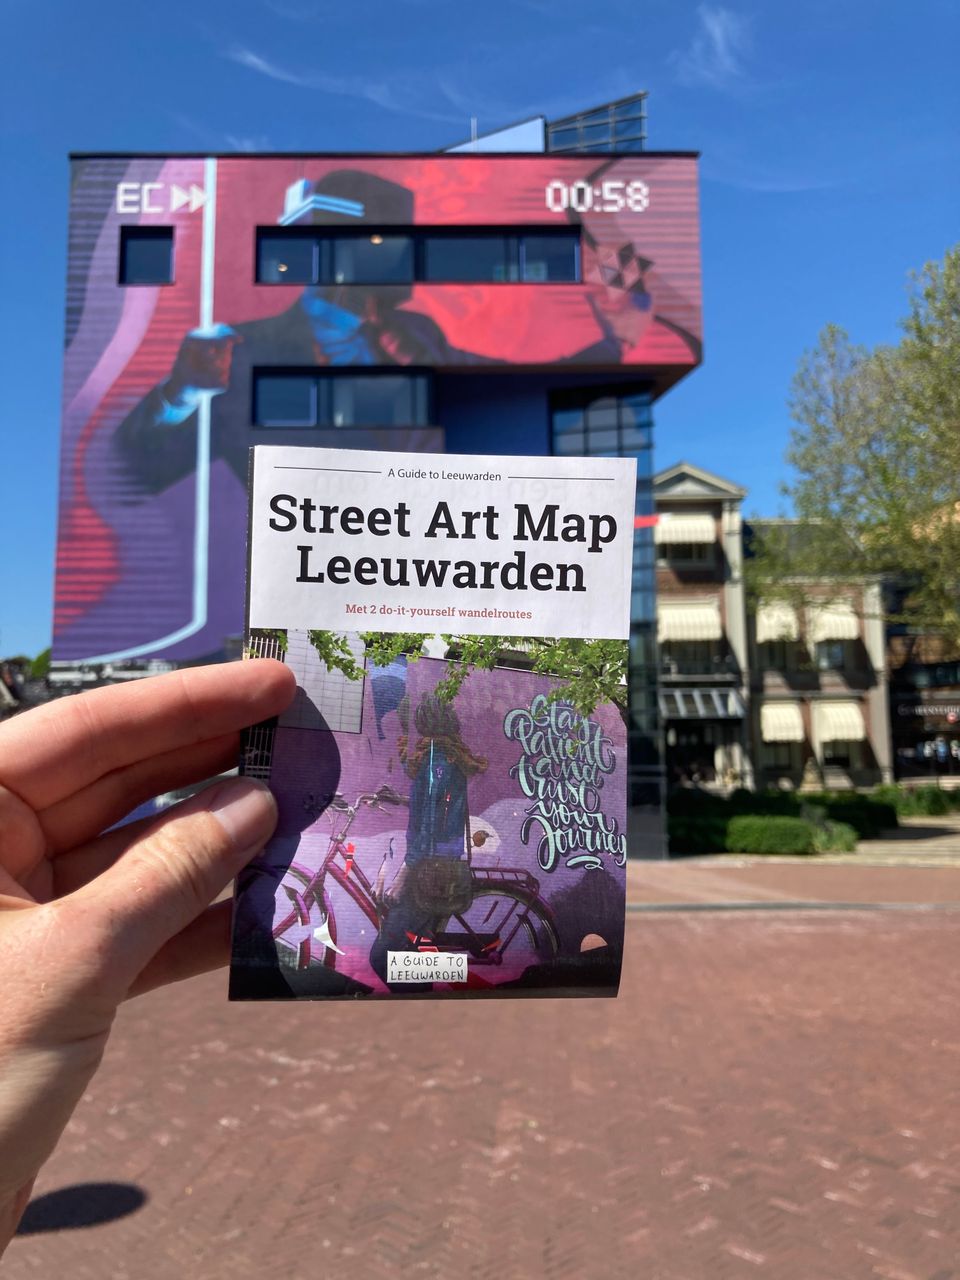 Met de Street Art Map ontdek je alle street art hotspots van de stad!